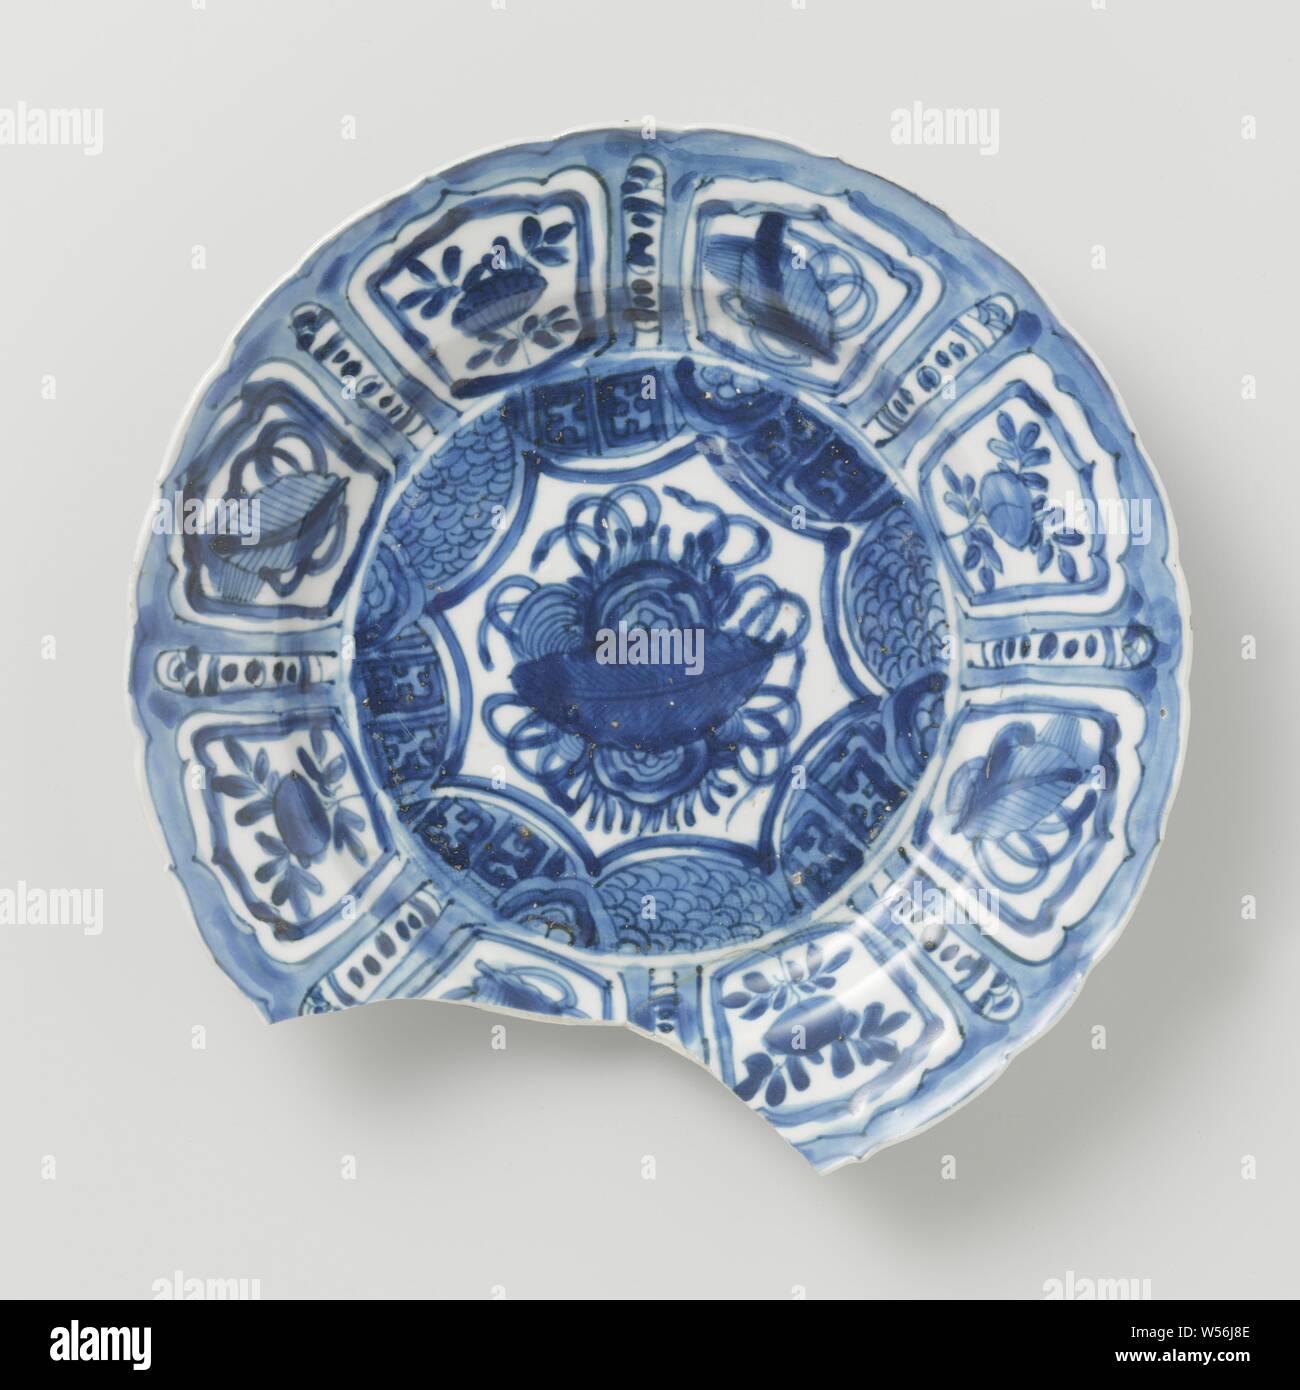 Kraak porcelaine plaque de la V.O.C.-ship le 'Witte Leeuw', en Chine, avant 1613, dynastie Ming-(1368-1644) / Wanli-période (1573-1619), porcelaine, émail, porcelaine, cobalt (minéral), la vitrification, H 3,1 cm × d 21,9 cm Banque D'Images